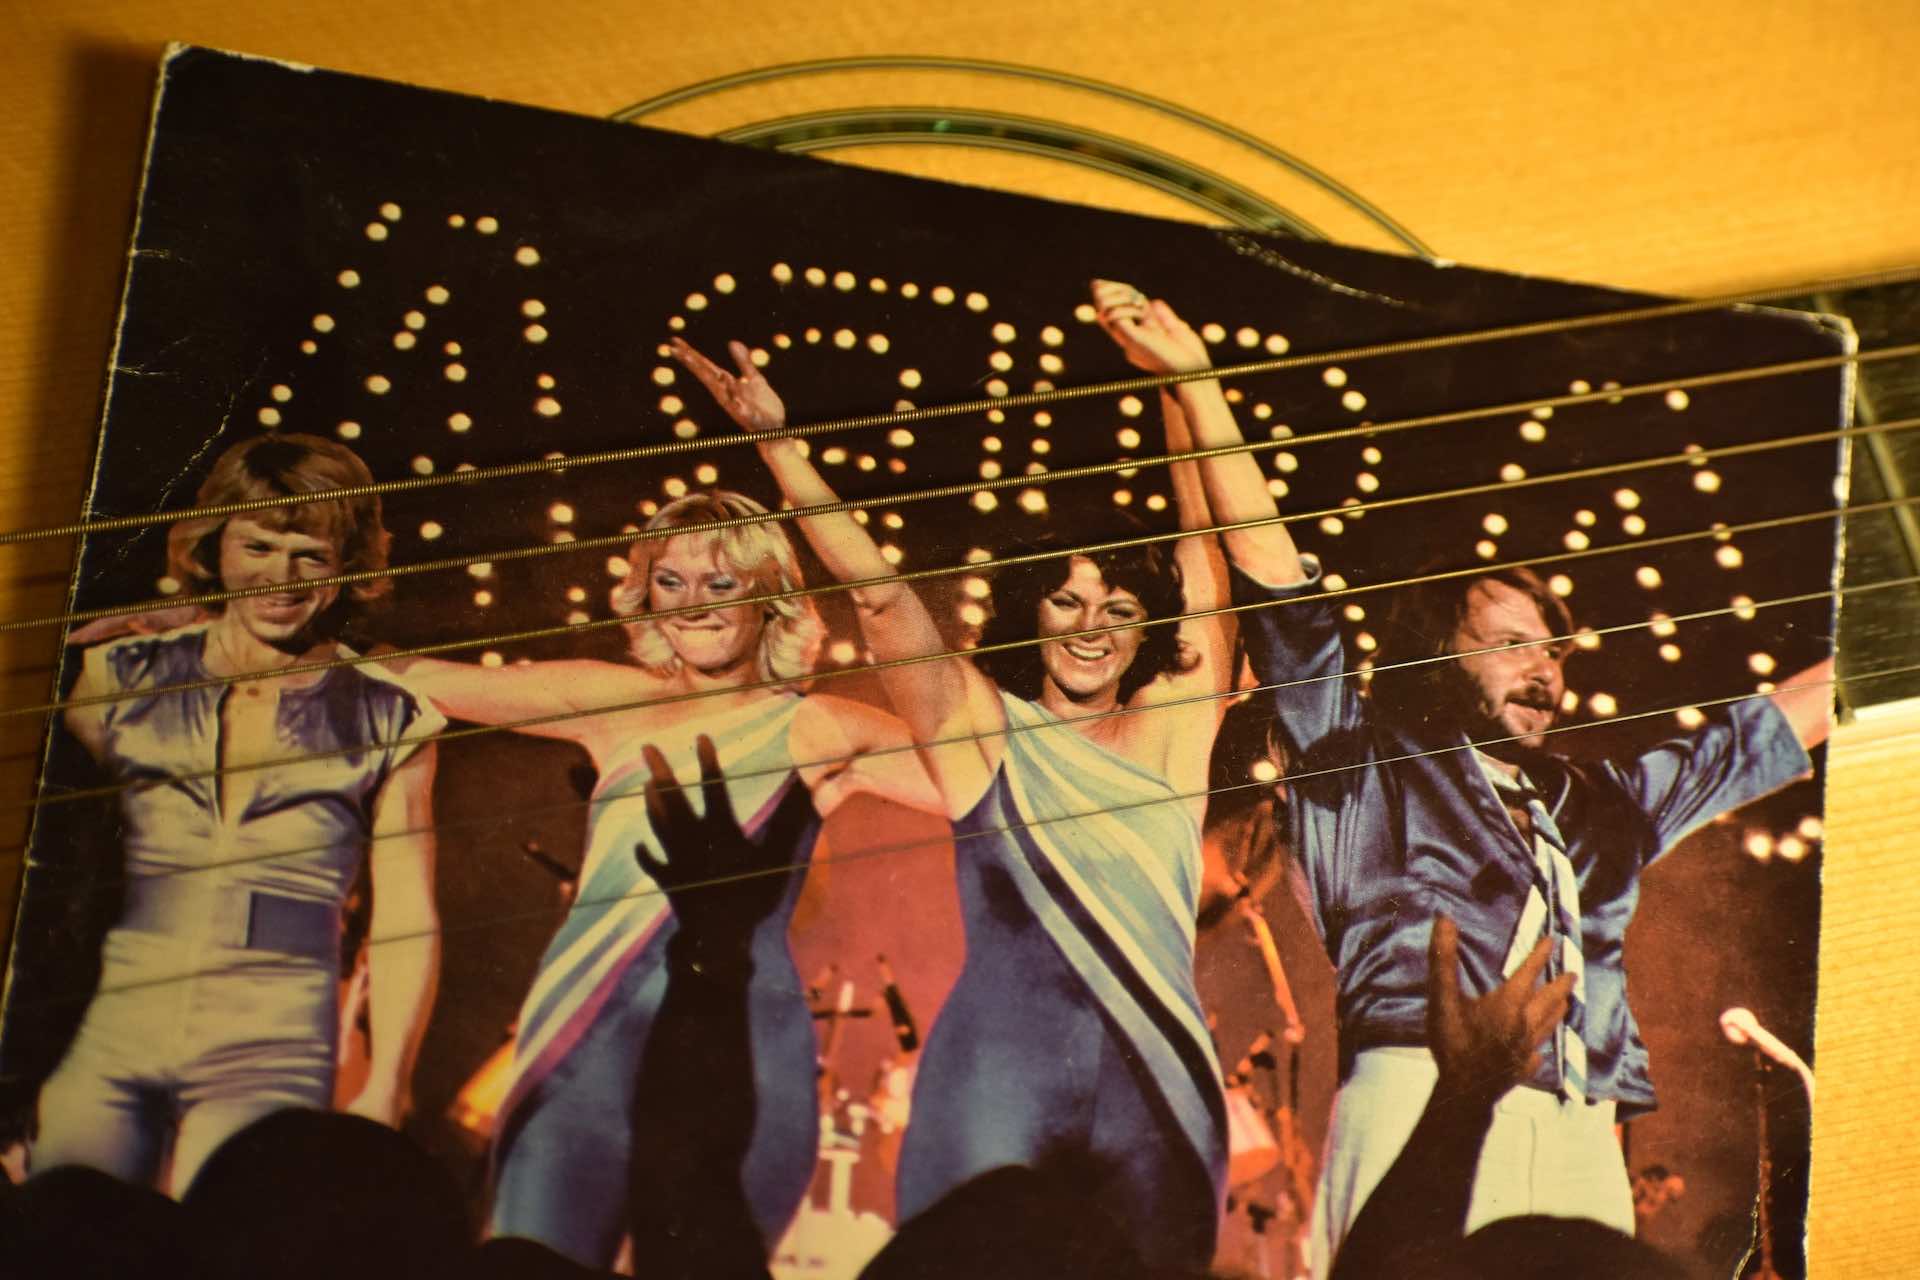 A vinyl record cover of ABBA's Mamma Mia